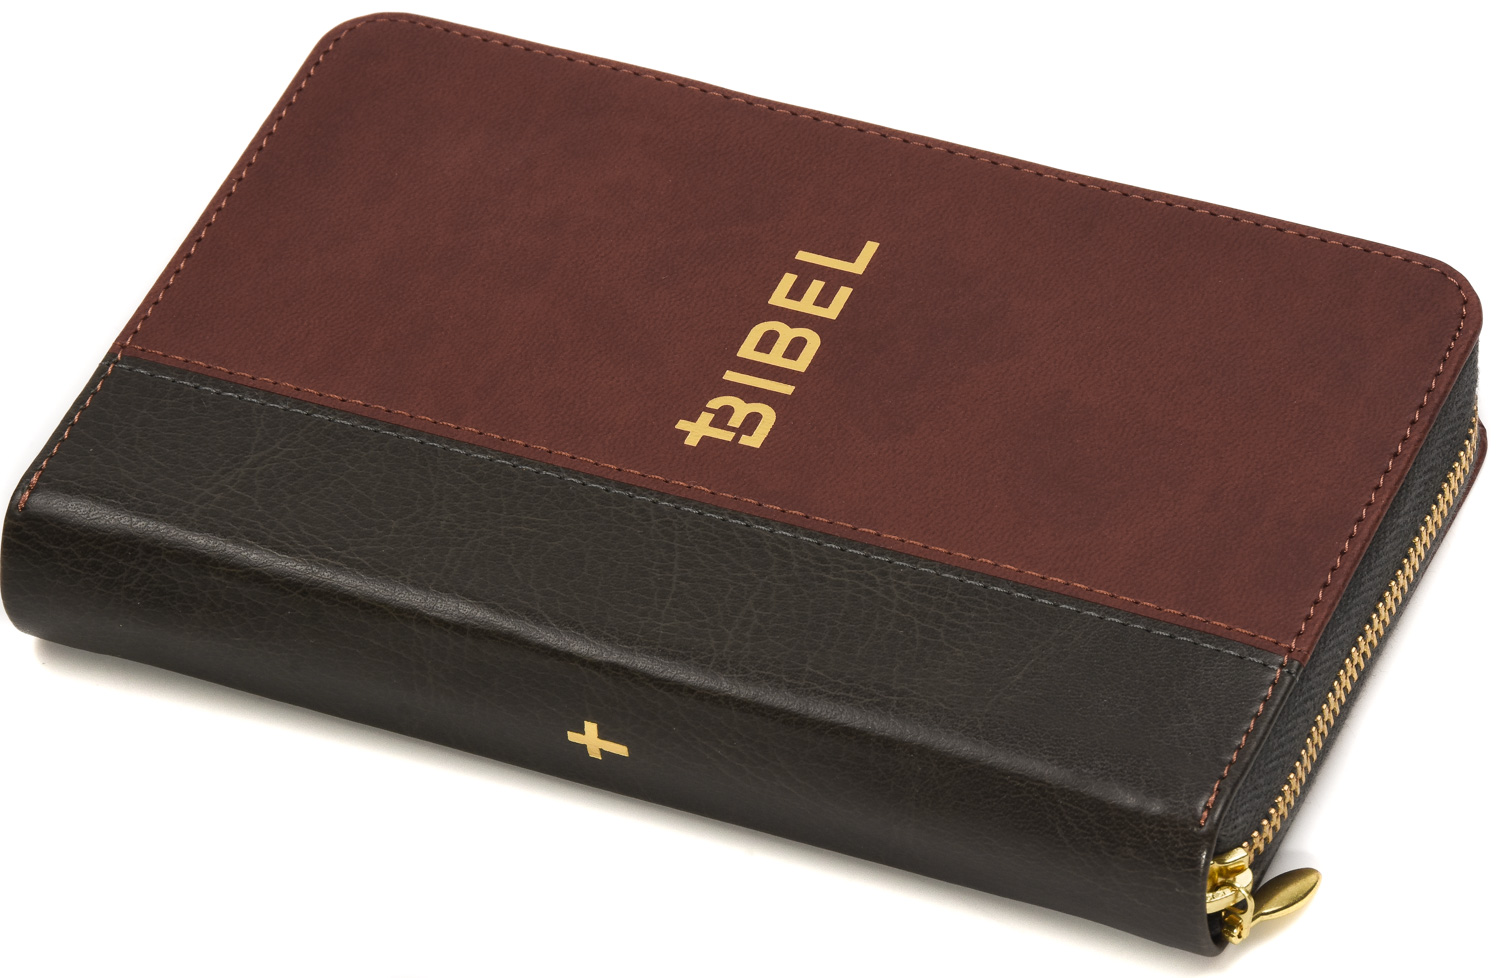 Die Bibel – Schlachter 2000 (Miniaturausgabe in PU-Einband, grau/braun)